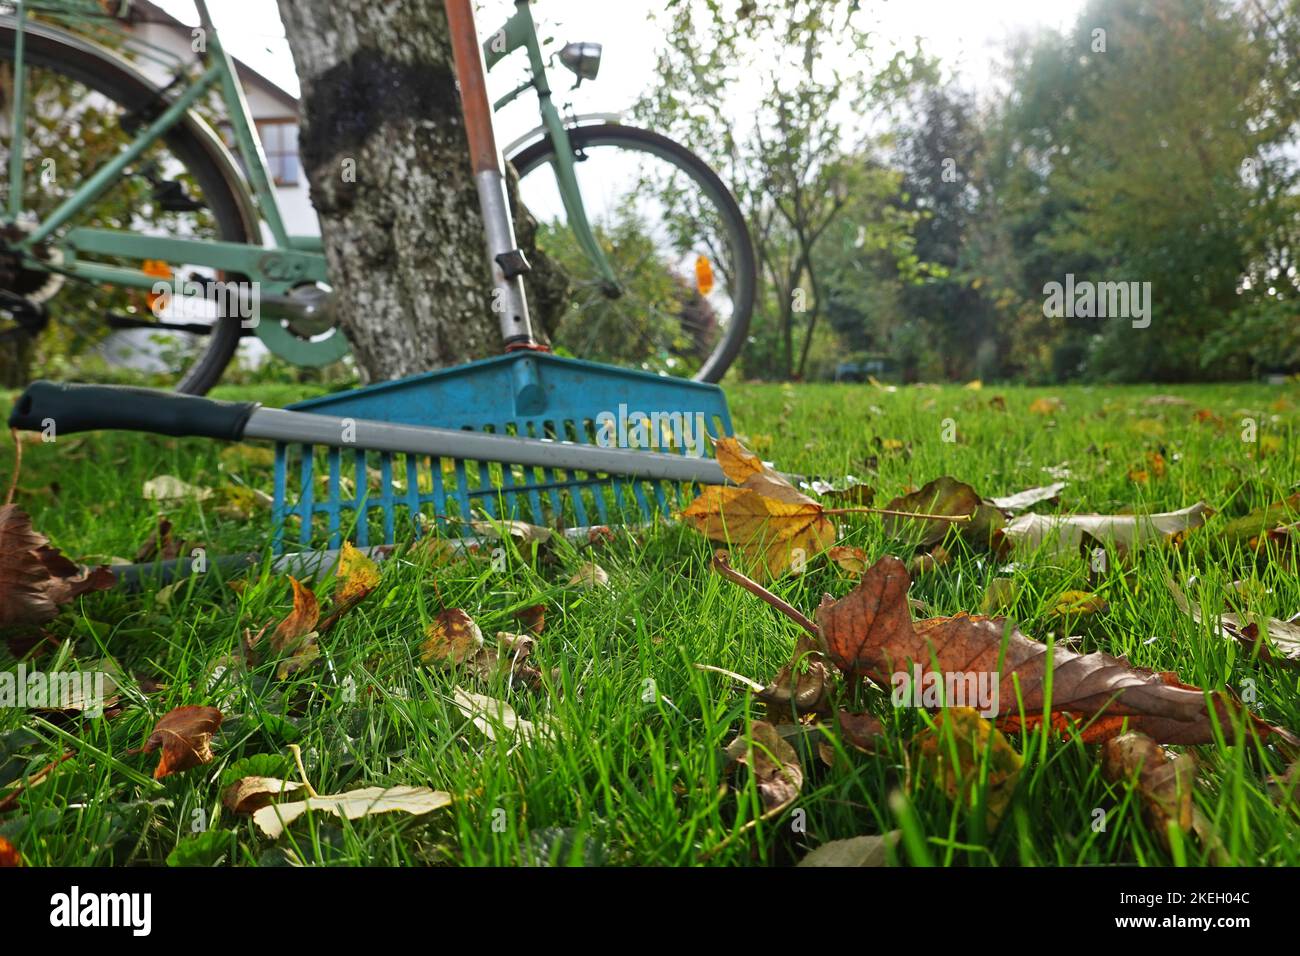 Laub rechen vor dem letzten Rasenschnitt, Deutschland Foto Stock